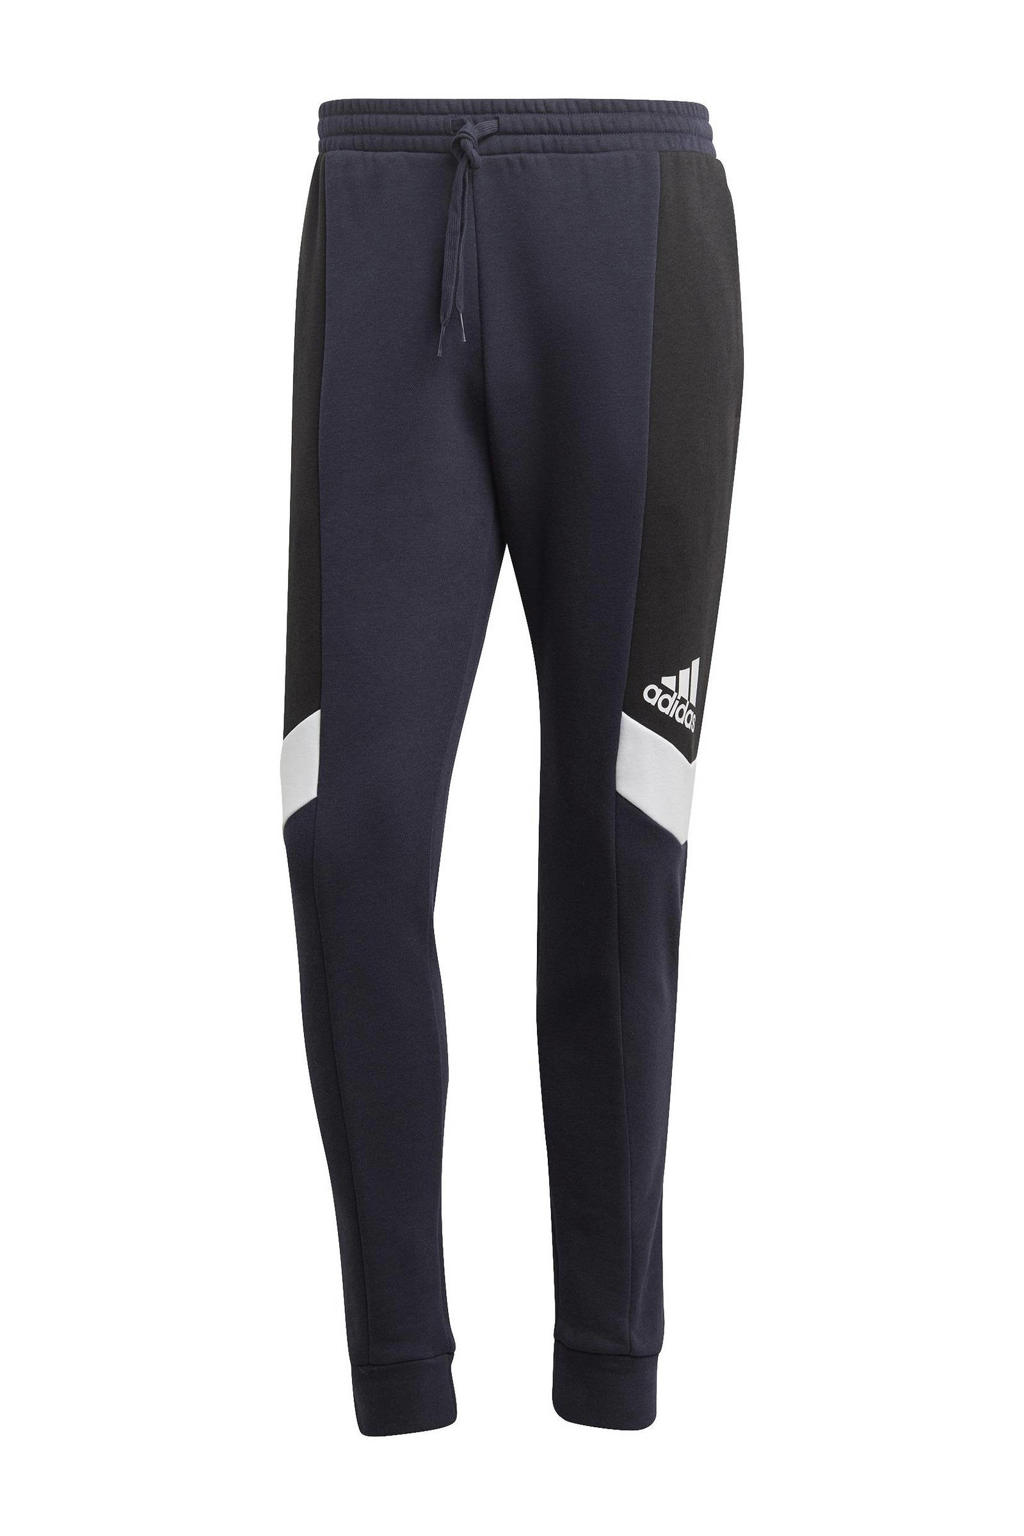 Donkerblauw en zwarte heren adidas Sportswear joggingbroek van katoen met regular fit en elastische tailleband met koord